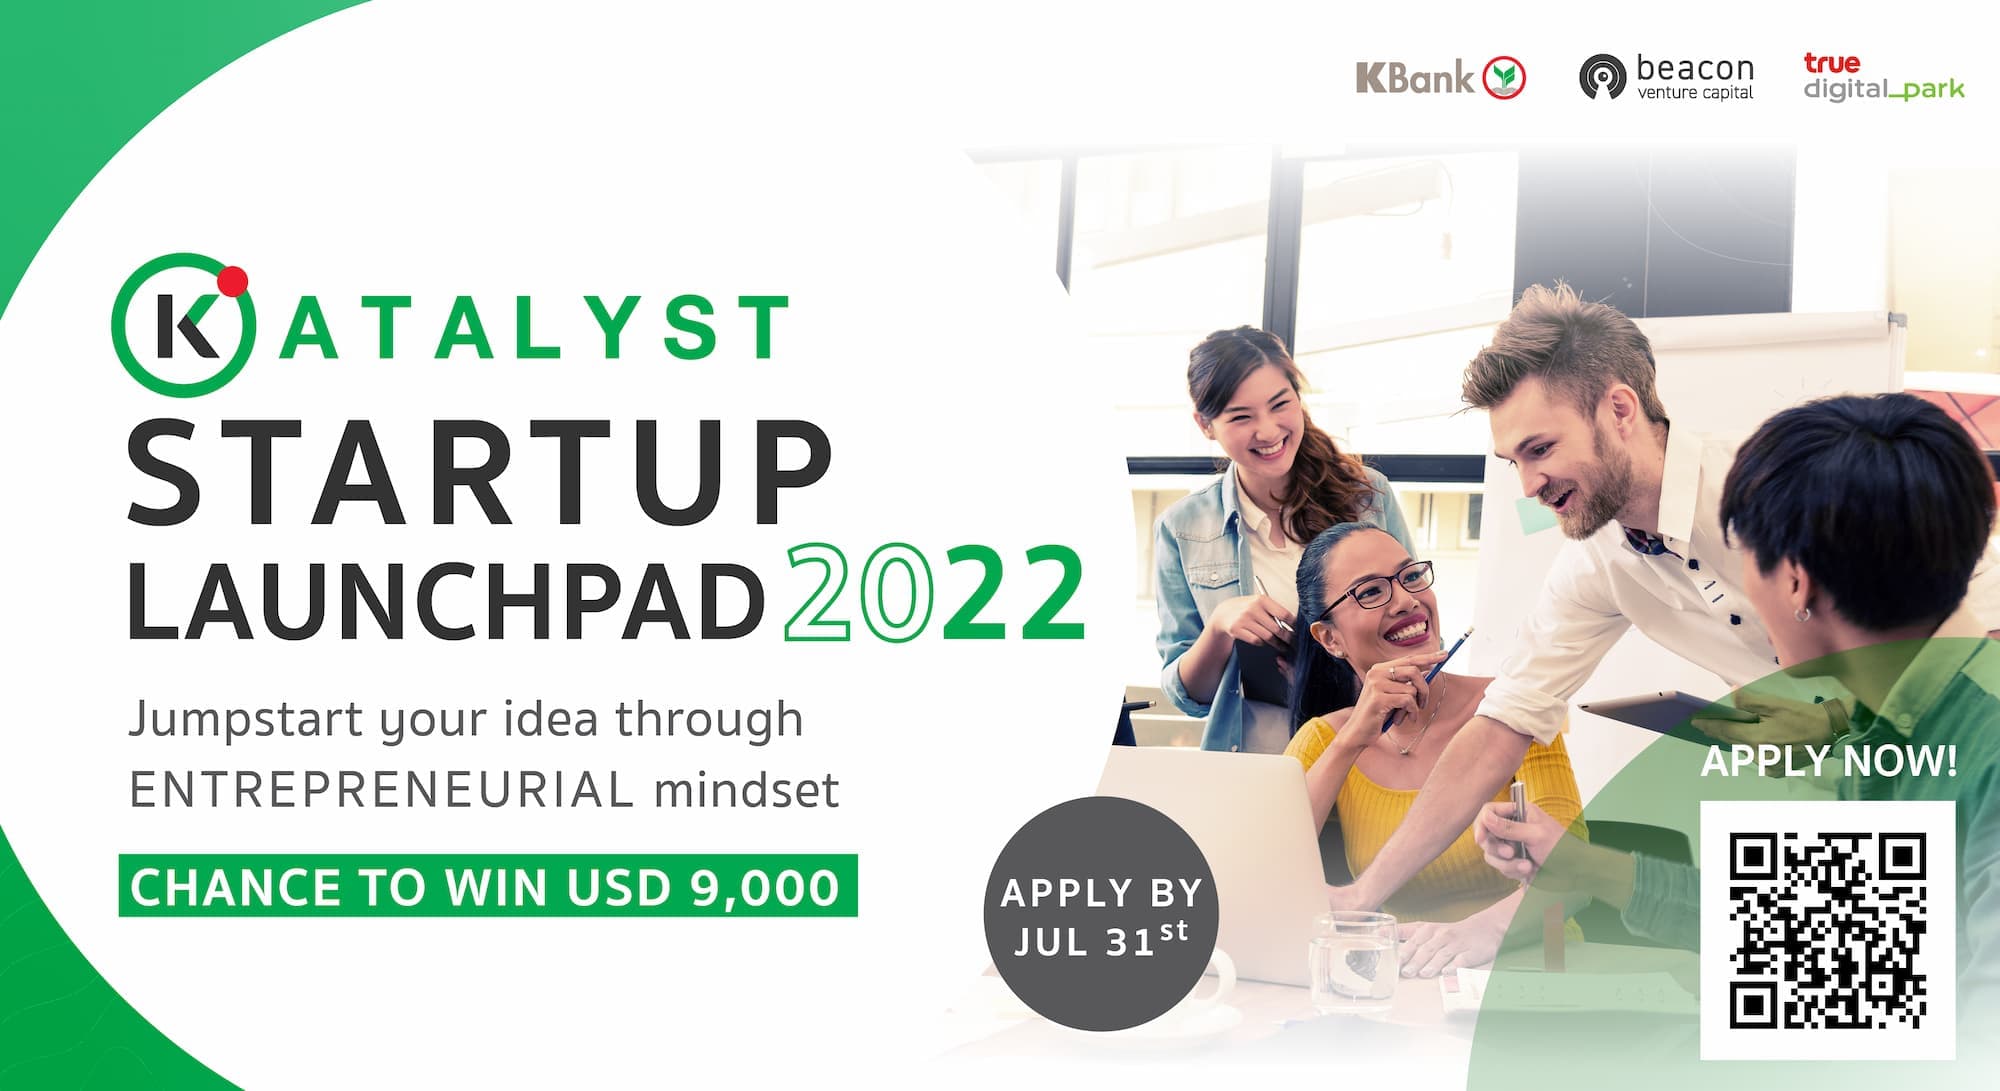 เชิญชวน Tech Startup เข้าร่วมโครงการ KATALYST STARTUP LAUNCHPAD 2022